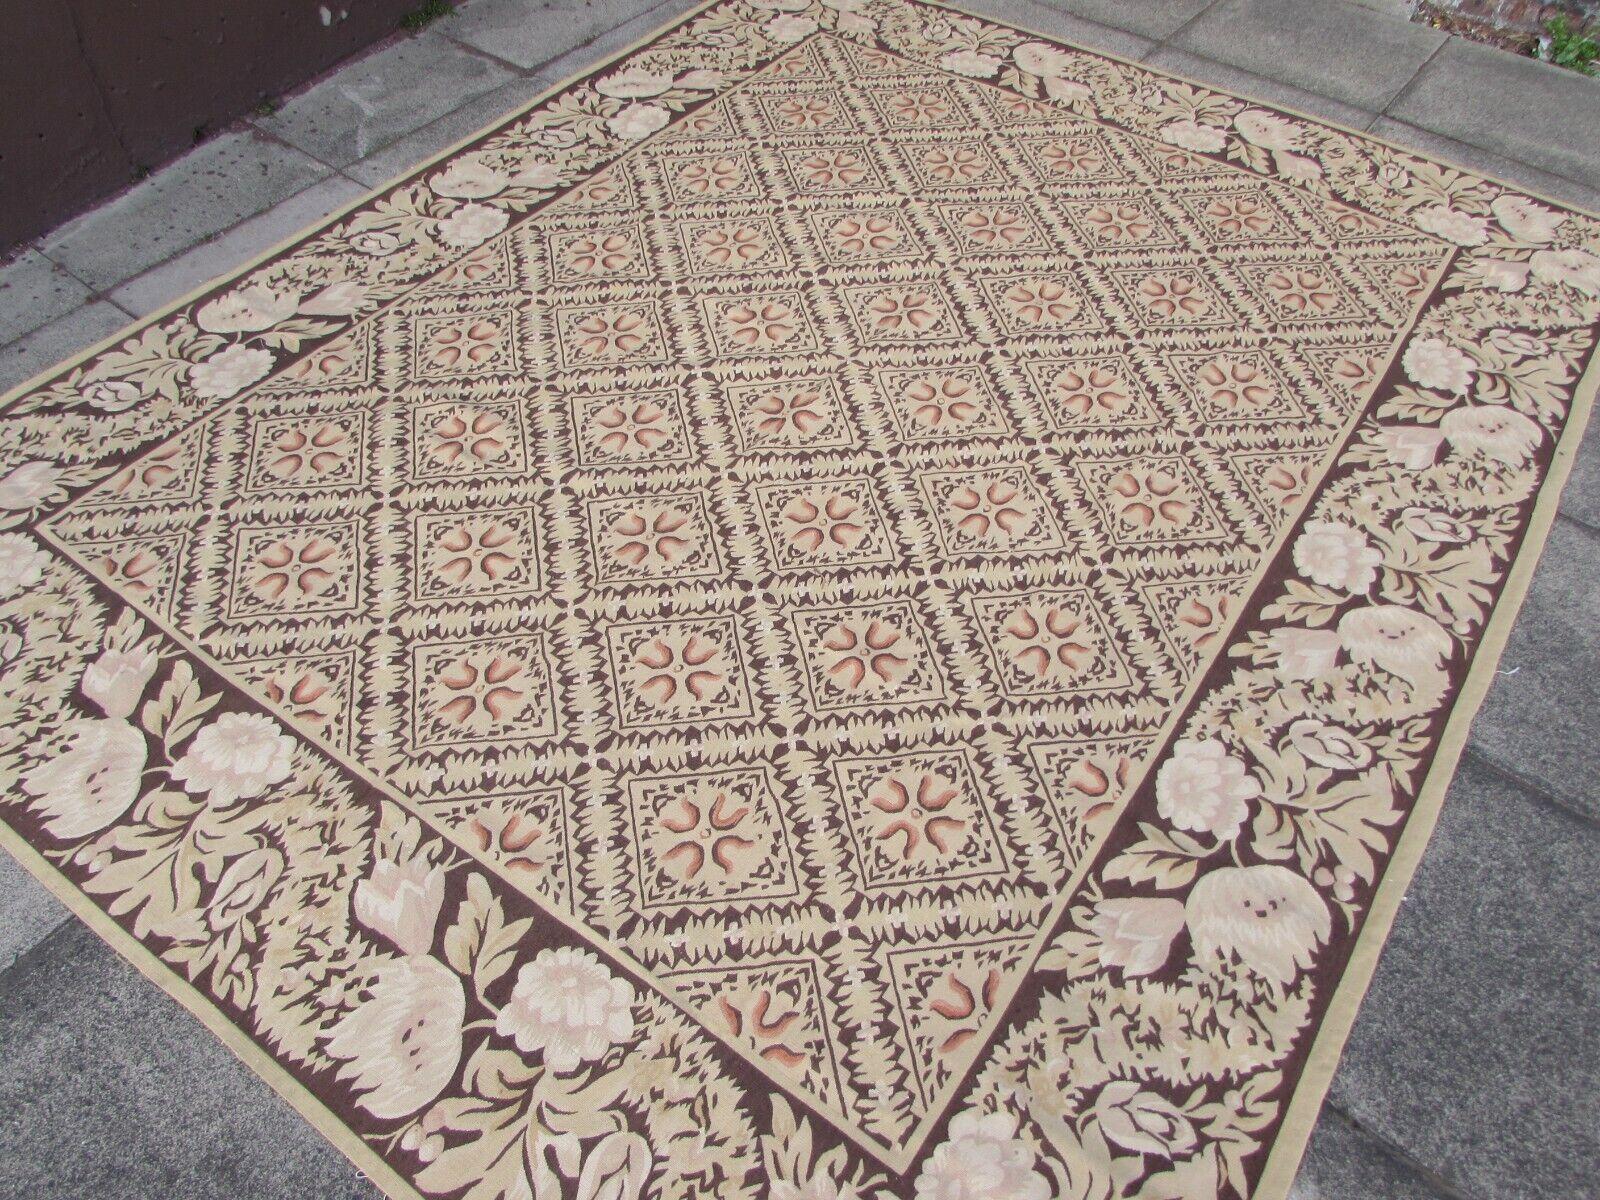 Ce tapis français d'Aubusson tissé à la main dans les années 1970 témoigne de la beauté durable du design français traditionnel. Mesurant 7,9' x 9,8' (243 x 300 cm), ce tapis est une véritable œuvre d'art. Il porte l'essence d'un ancien design